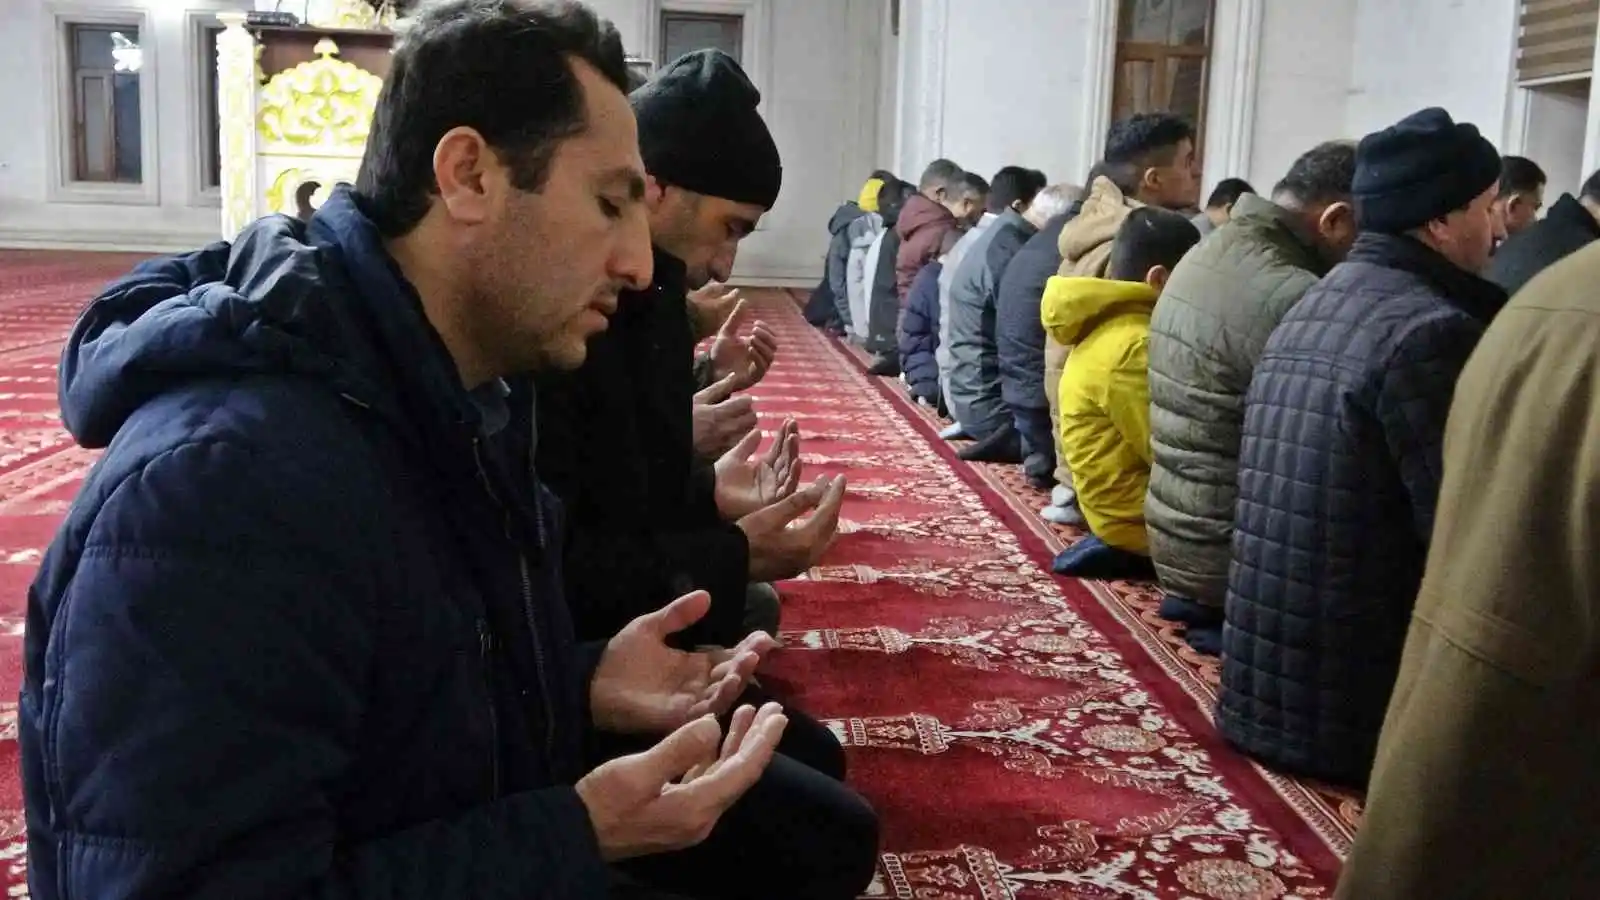 Yüksekovalılar İsveç’te Kur’an-ı Kerim’i yakan Rasmus Paludan’ın çirkin eylemine karşı sabah namazında dualarla tepki gösterdiler
